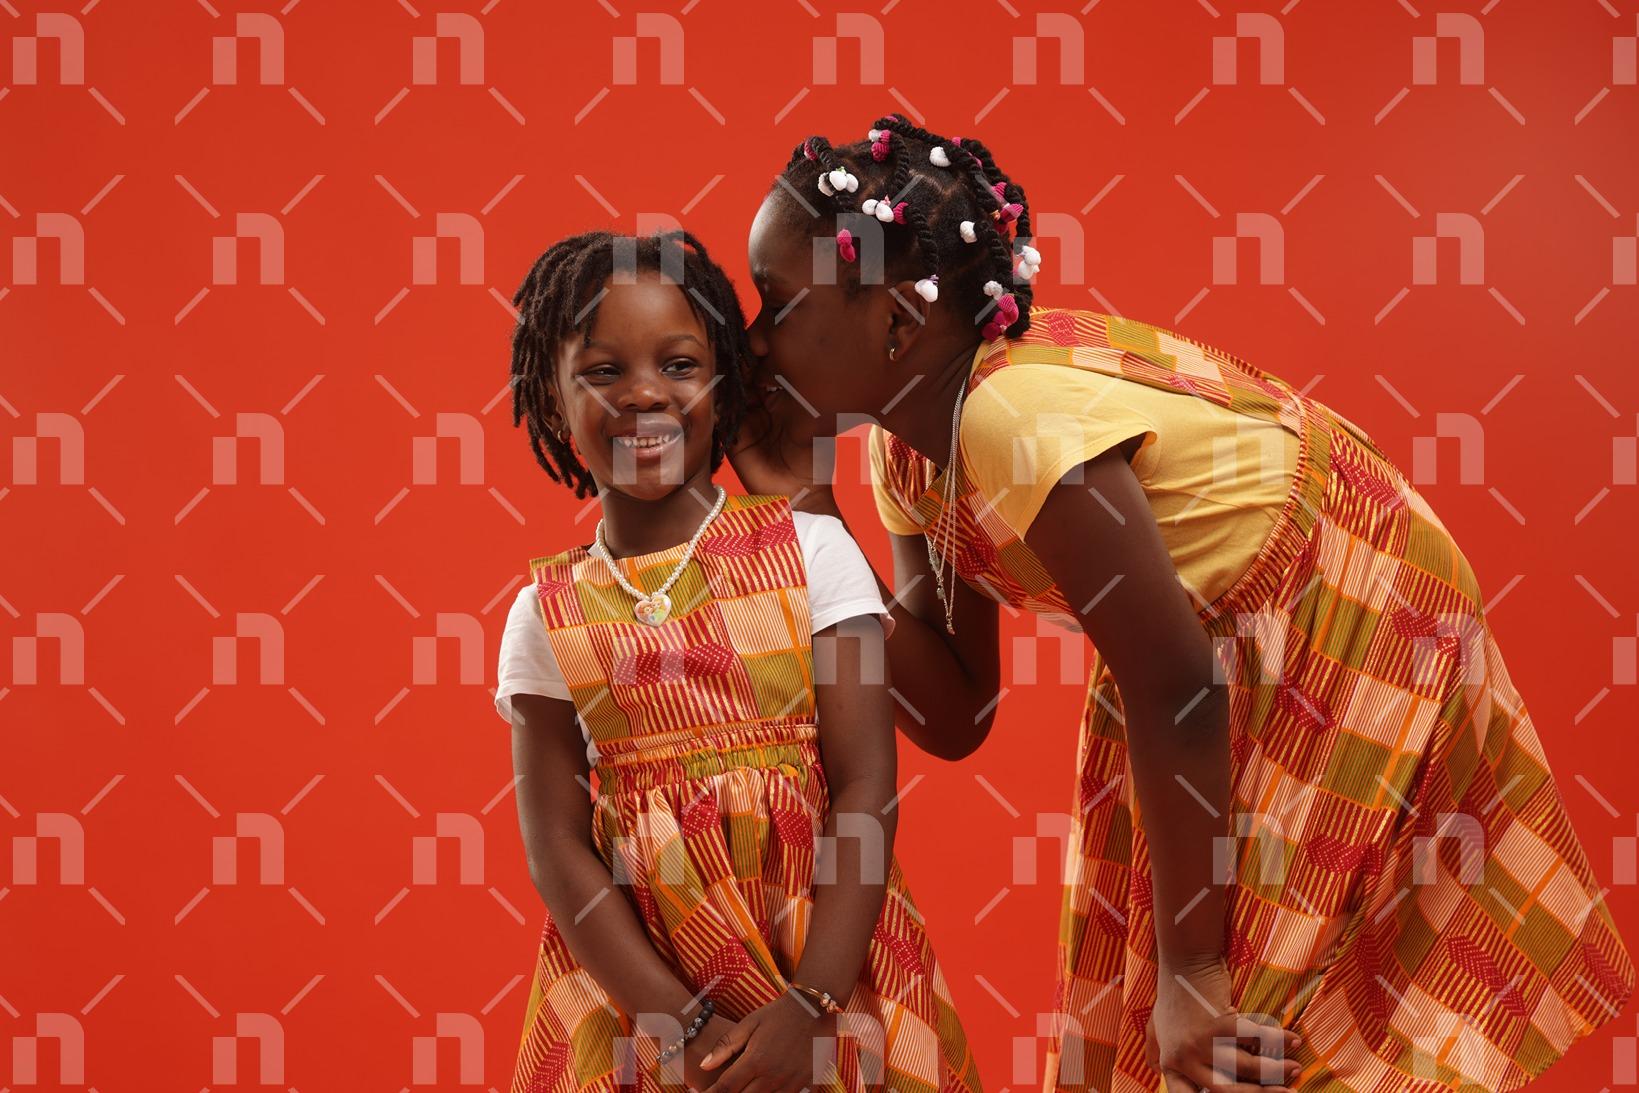 deux-fillettes-agees-dentre-5-et-10-ans-vetues-en-tenues-de-ville-faites-de-pagne-traditionnel-mijotant-quelque-chose-avec-le-sourire